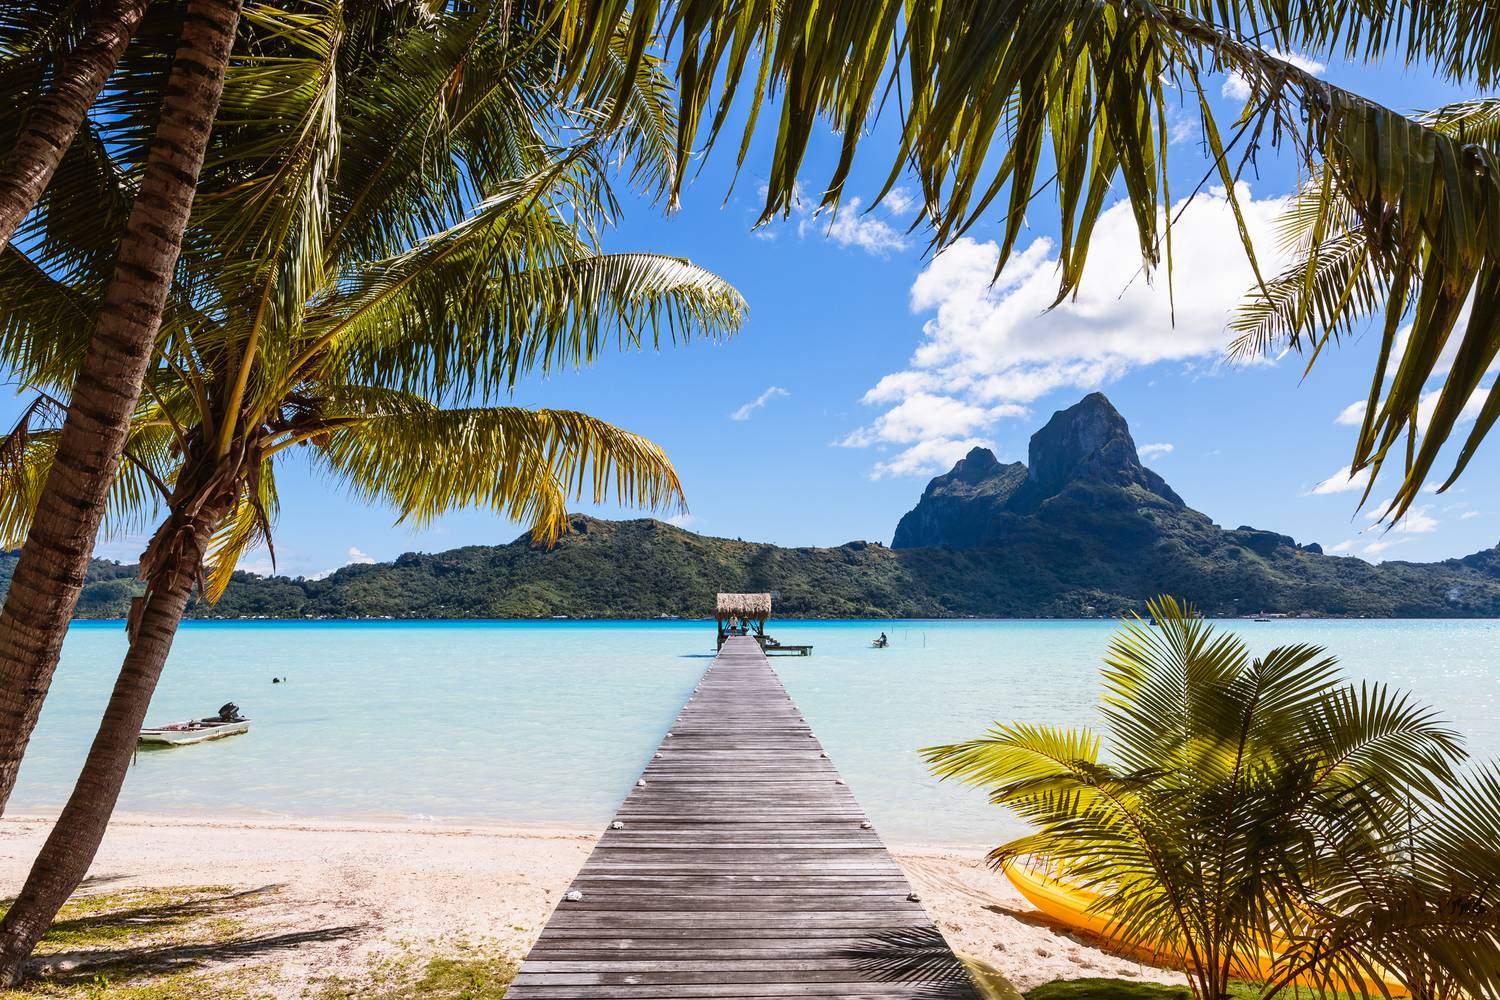 A Francia Polinézia gyöngyszeme, Bora Bora lett a listavezető, a bakancslistás paradicsomi helyszín egy tökéletes képeslap idilljét idézi, a környező táj pedig egyszerűen varázslatos.